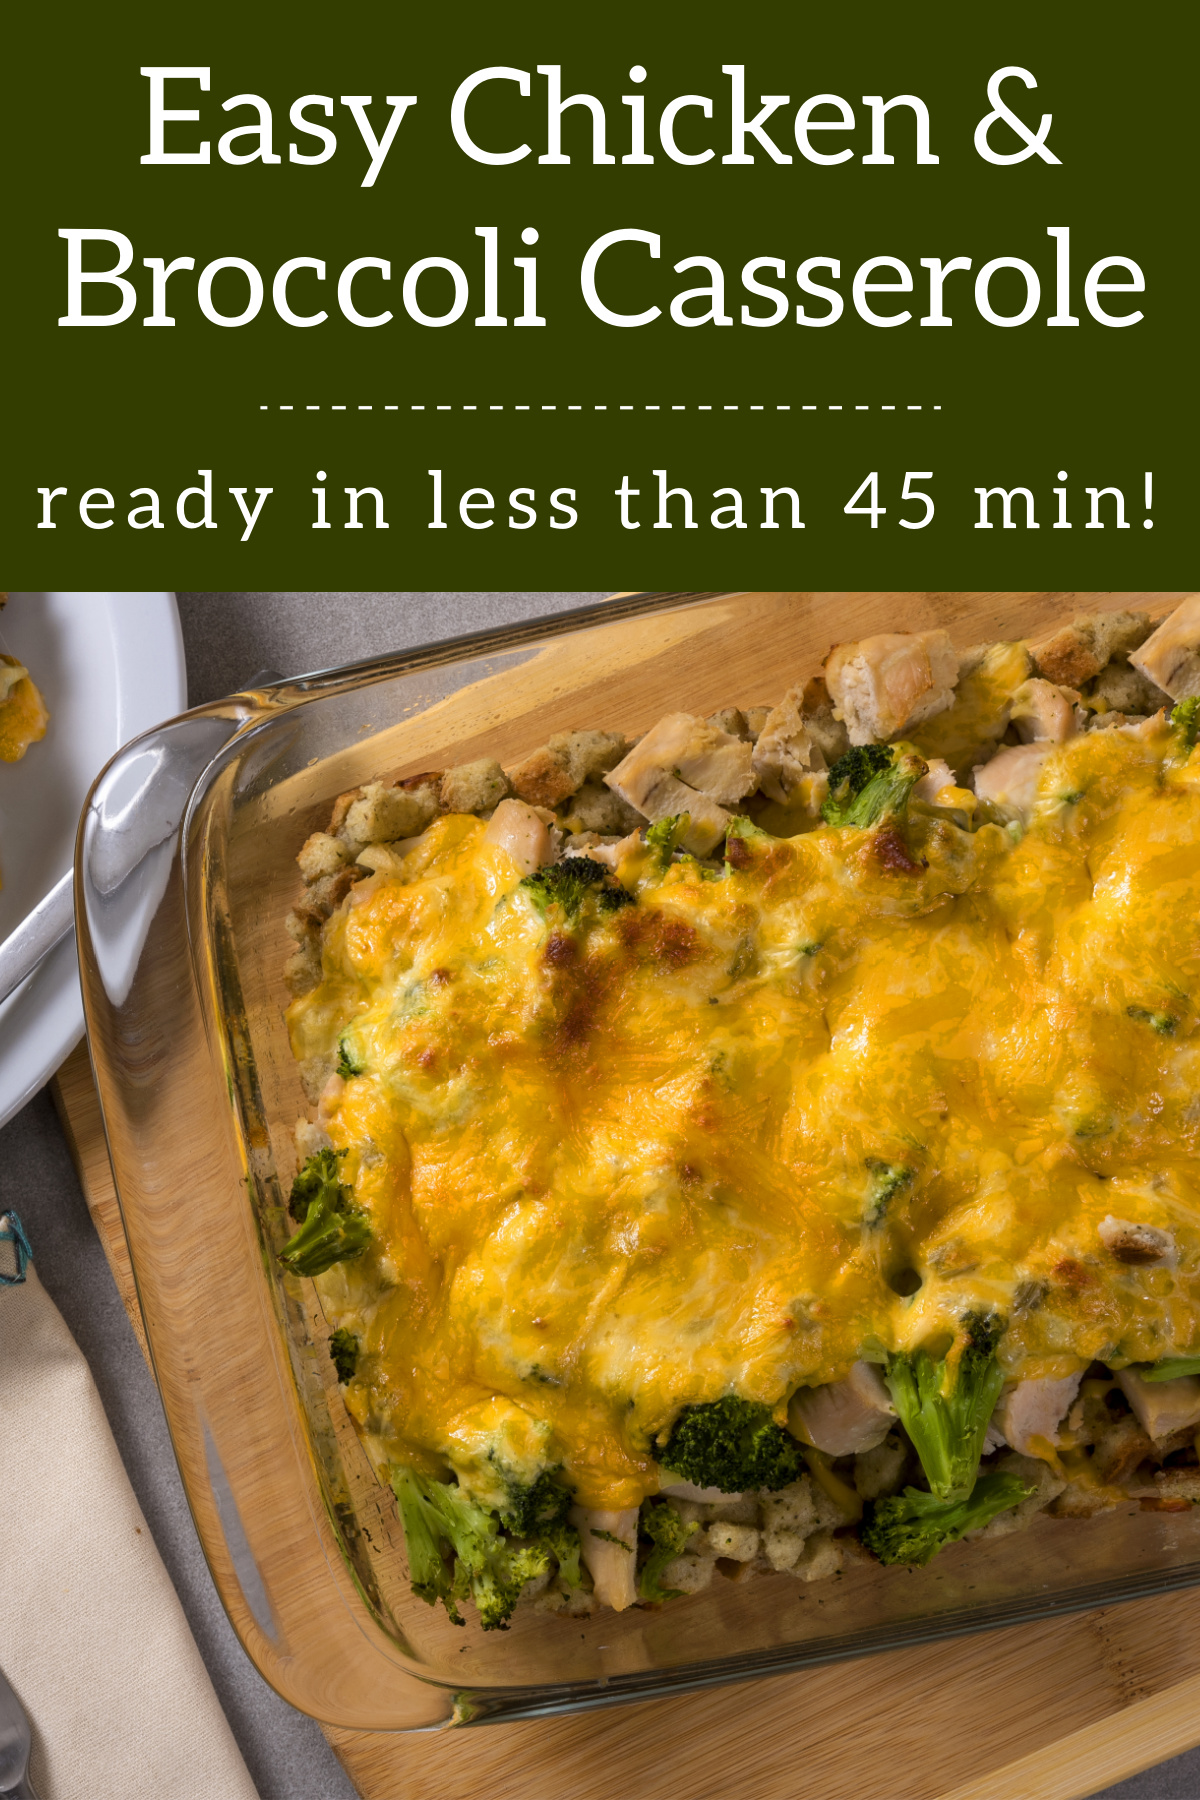 Easy Chicken & Broccoli Casserole Recipe